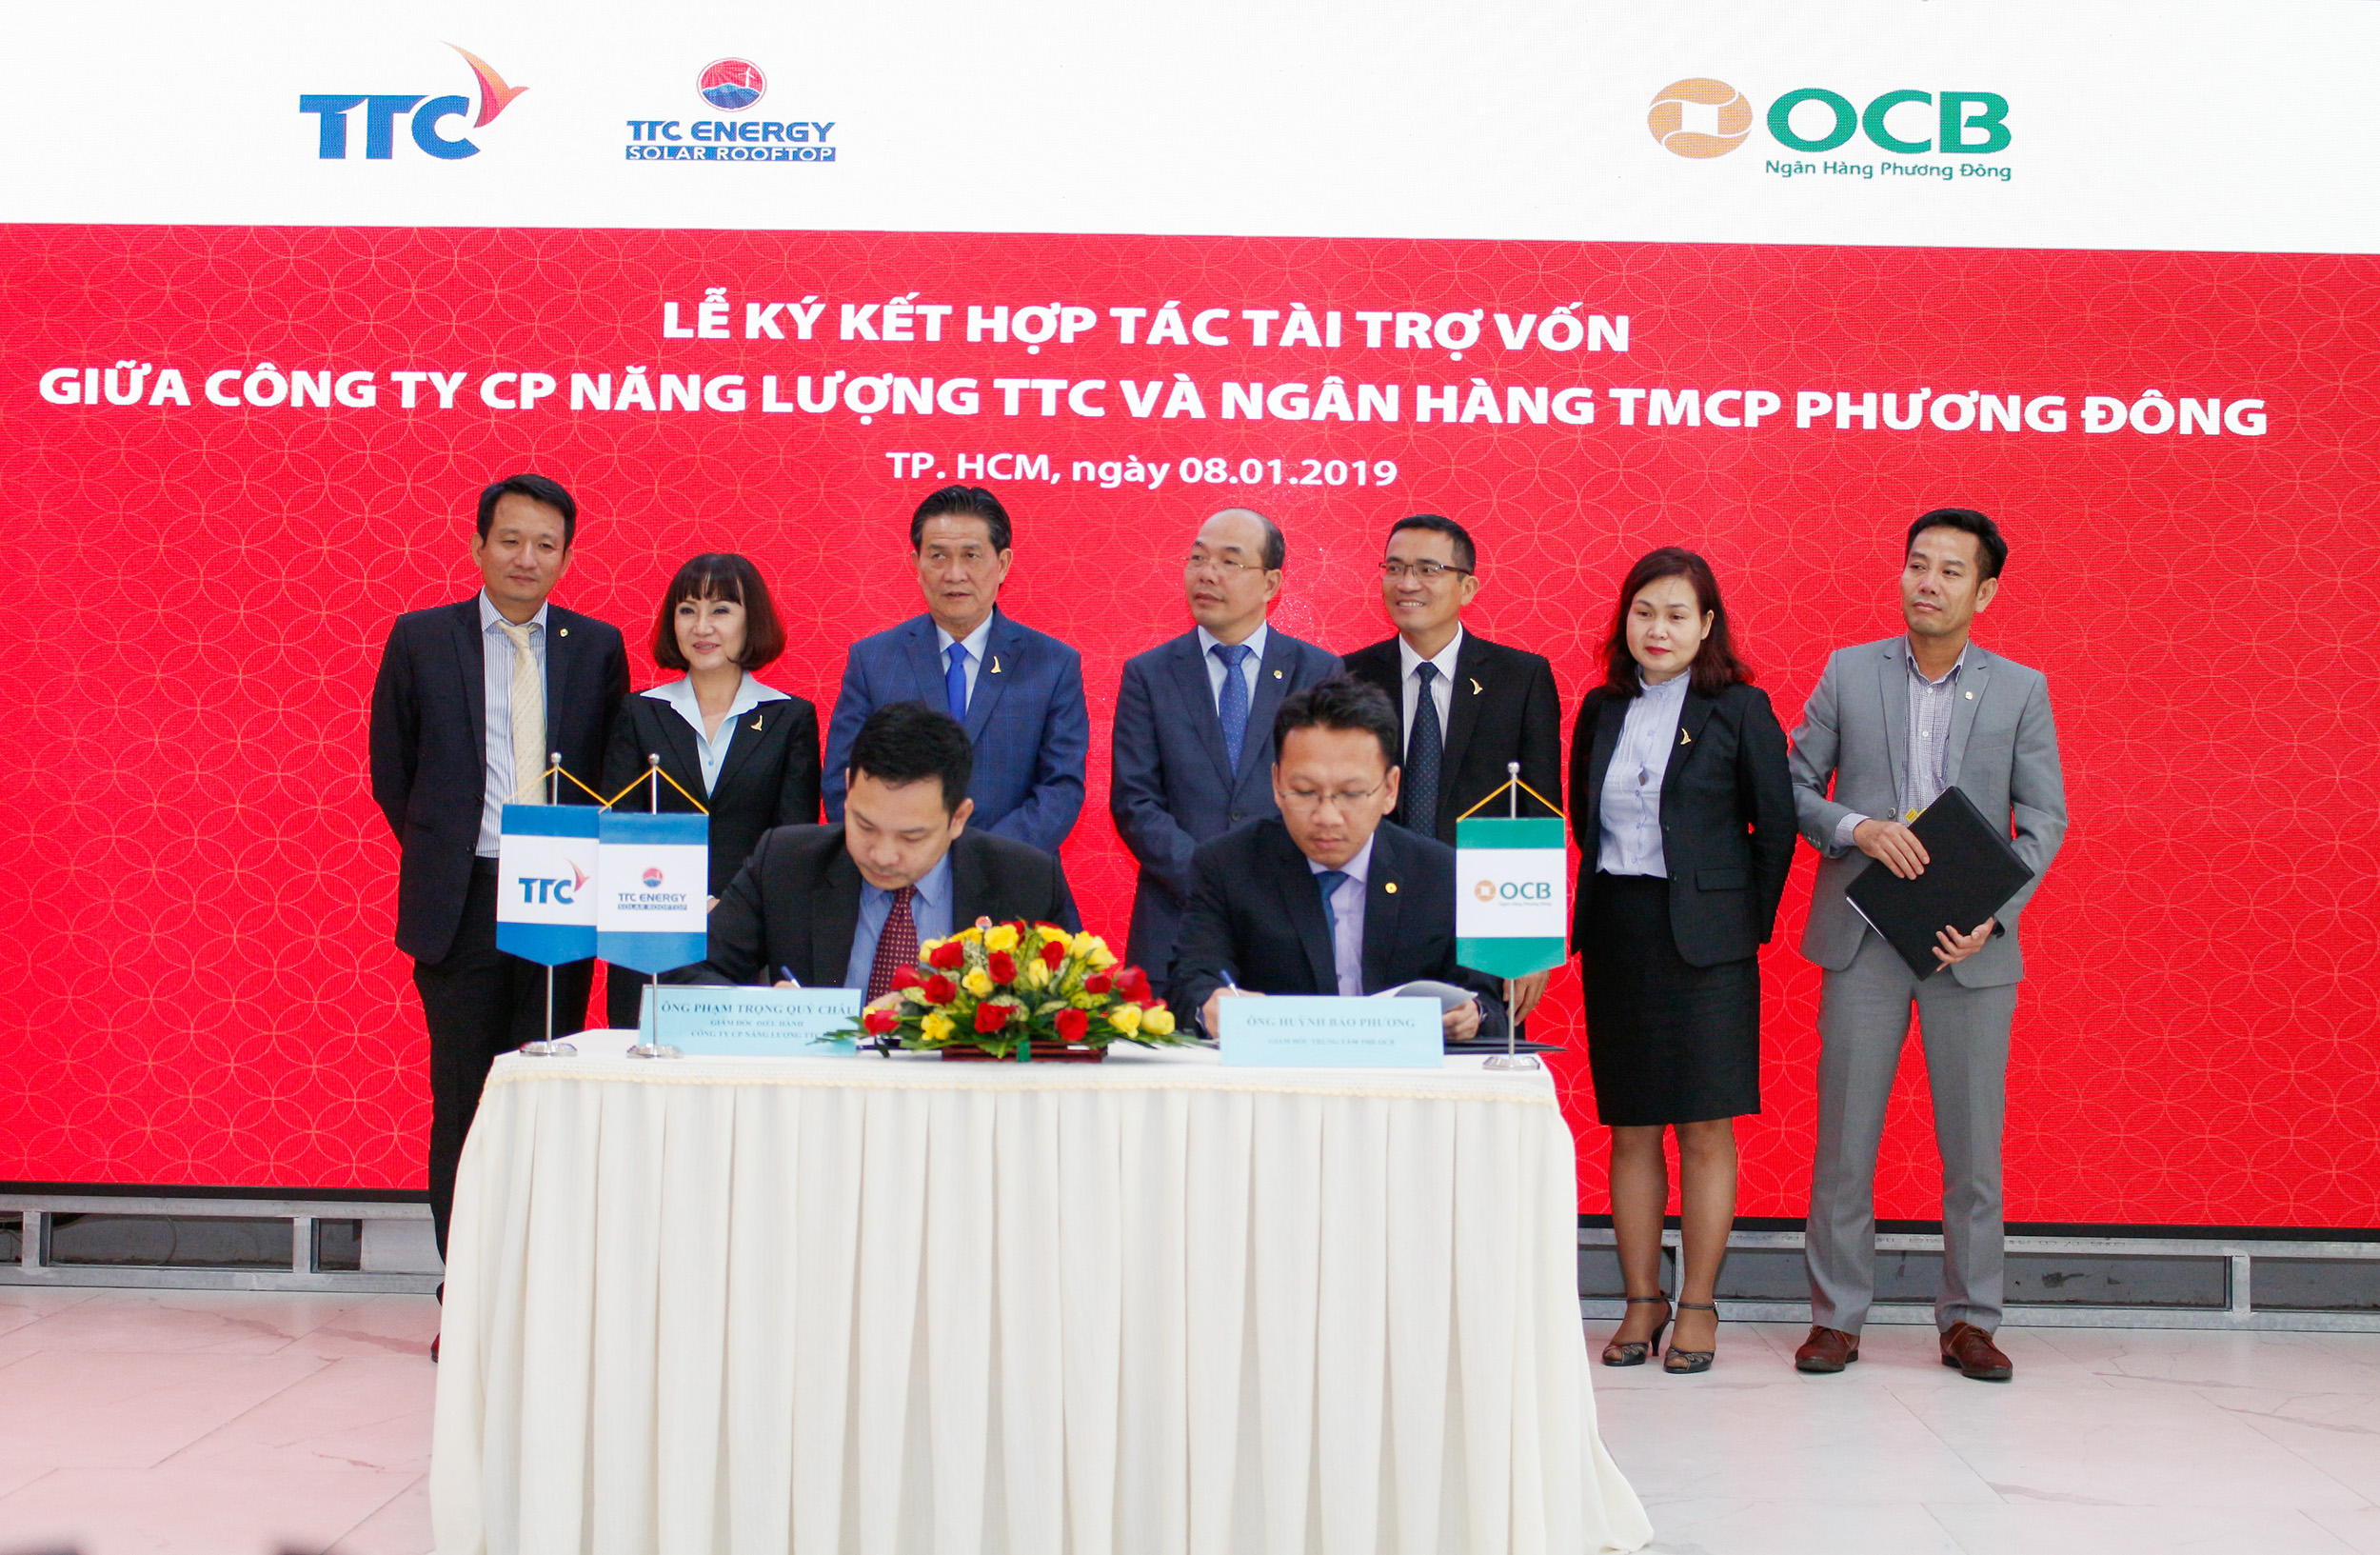 Ông Huỳnh Bảo Phương – Giám đốc Trung tâm thẻ OCB  và và Ông Phạm Trọng Quý Châu - Giám đốc điều hành TTC Energy  ký kết hợp tác chương trình ưu đãi dành cho khách hàng lắp đặt hệ thống điện mặt trời mái nhà